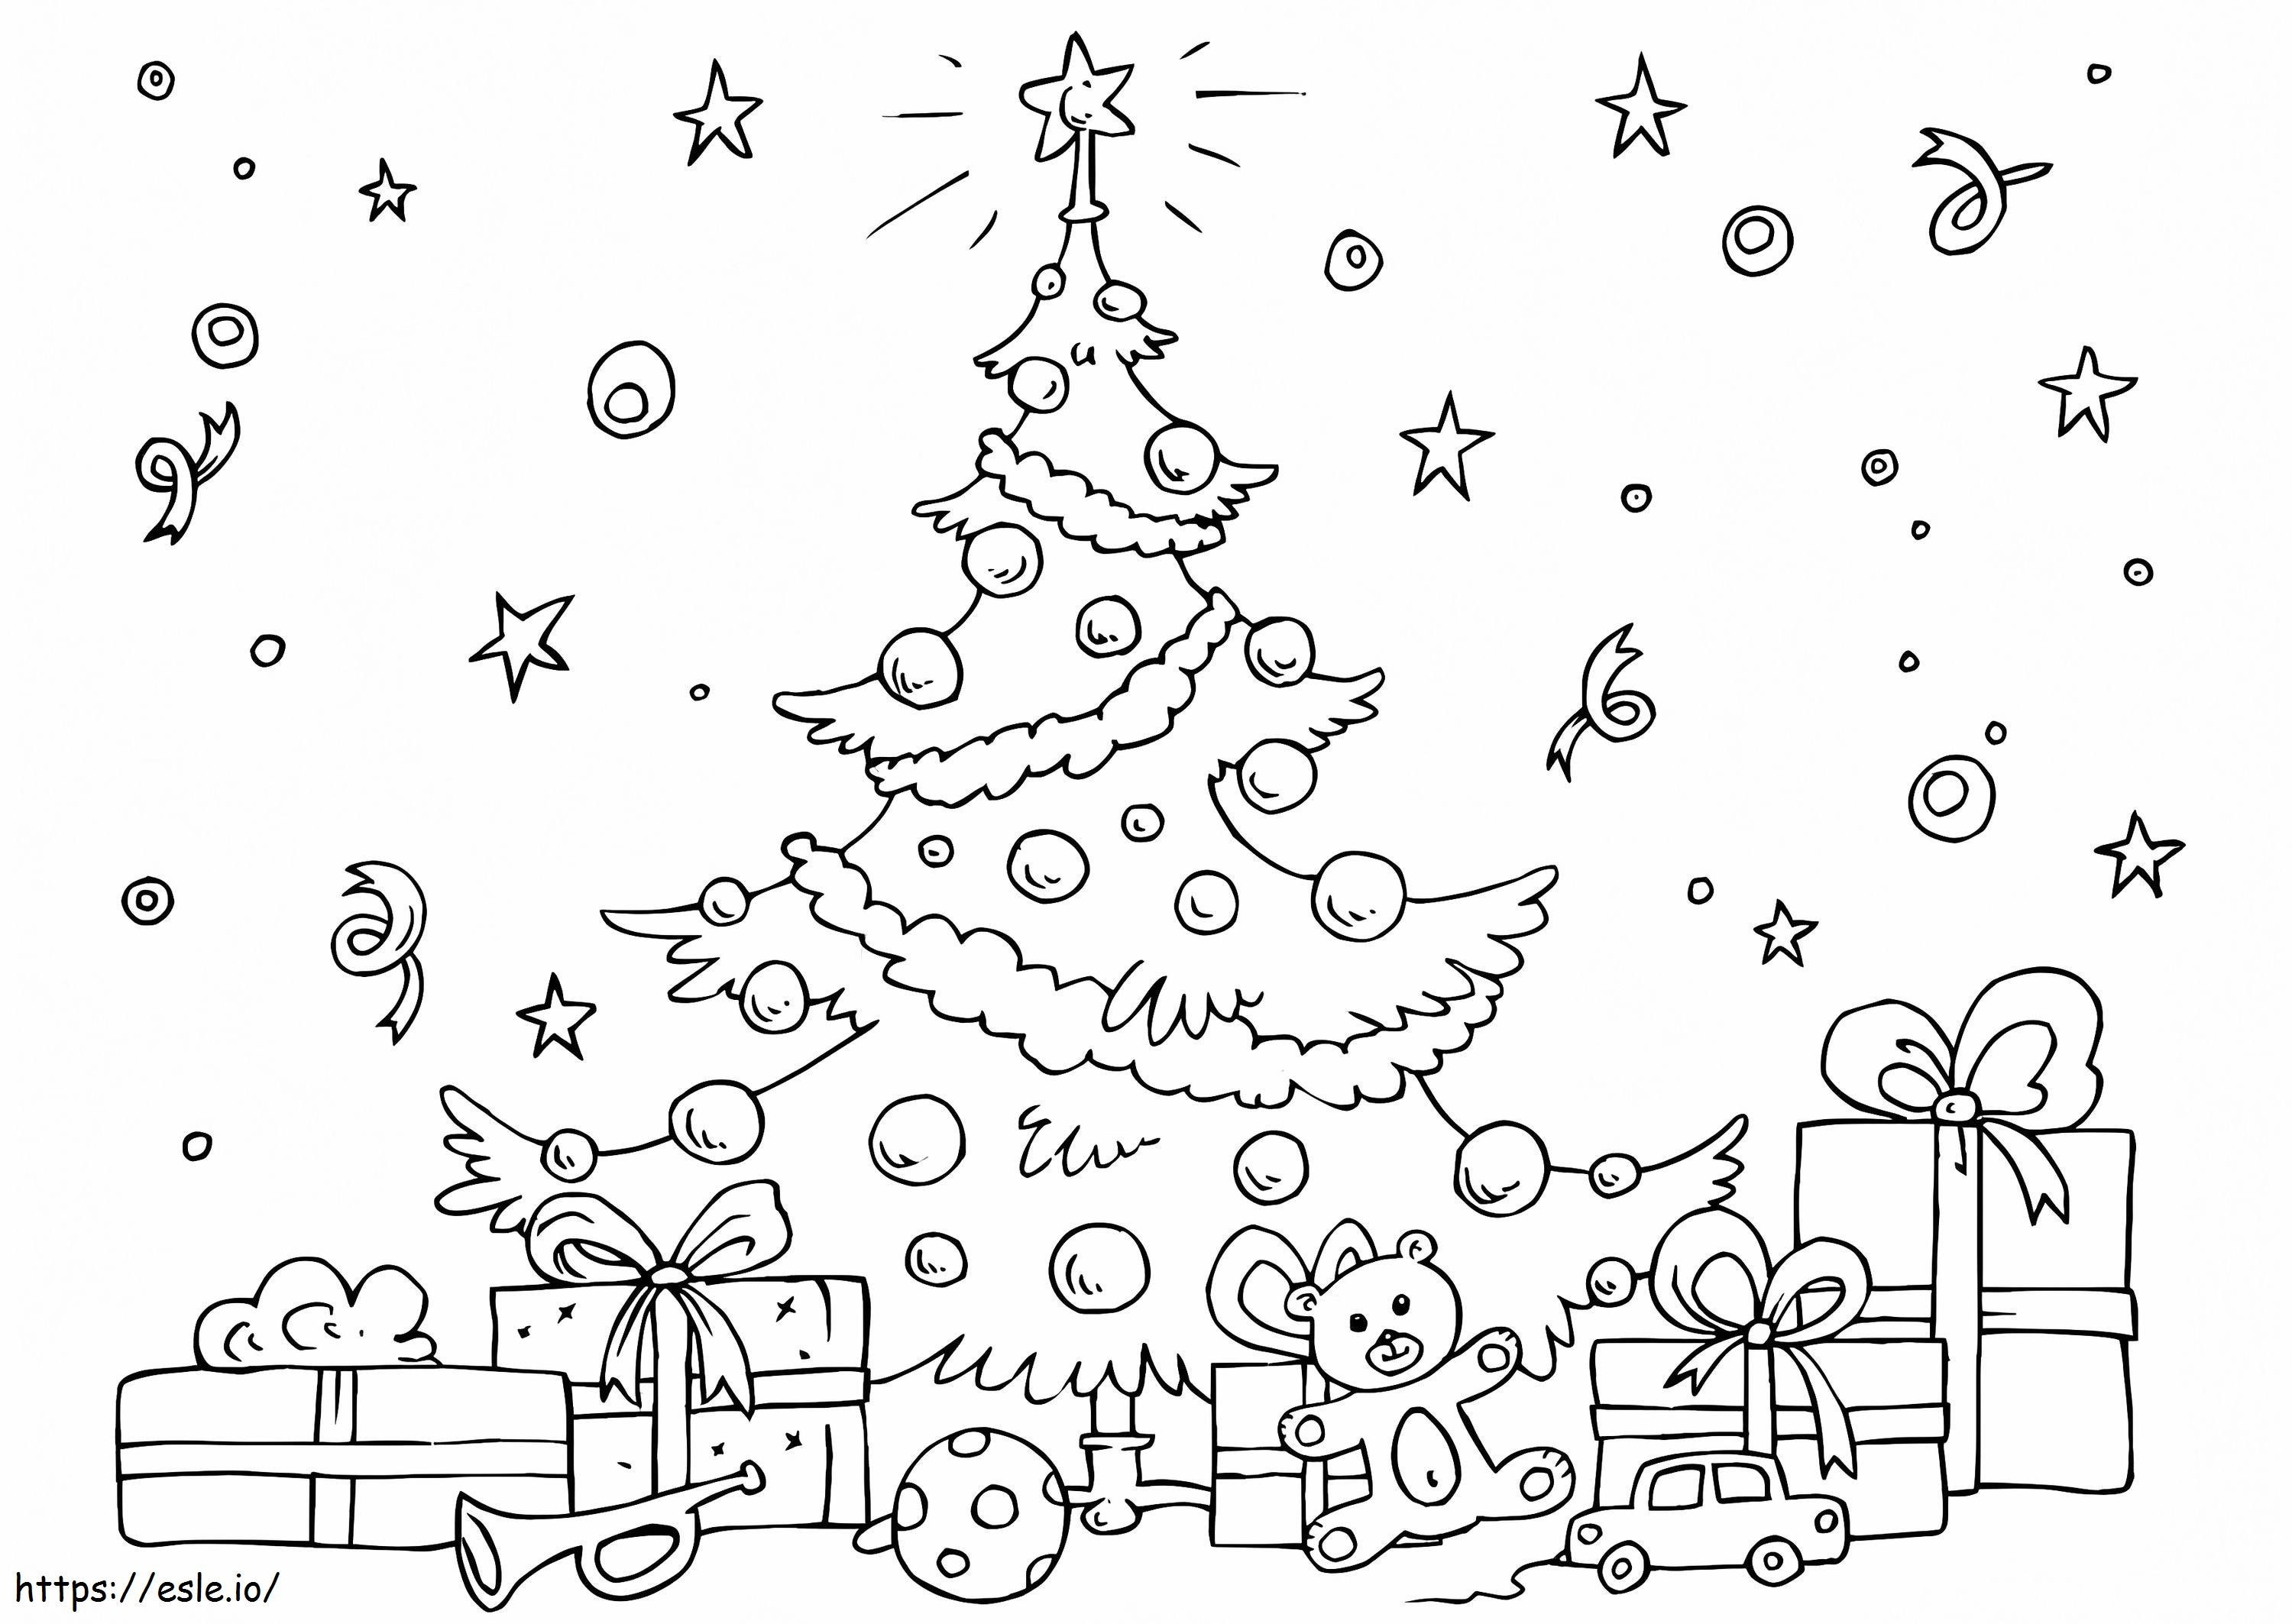 Weihnachtsbaum mit Geschenkboxen und Spielzeug ausmalbilder